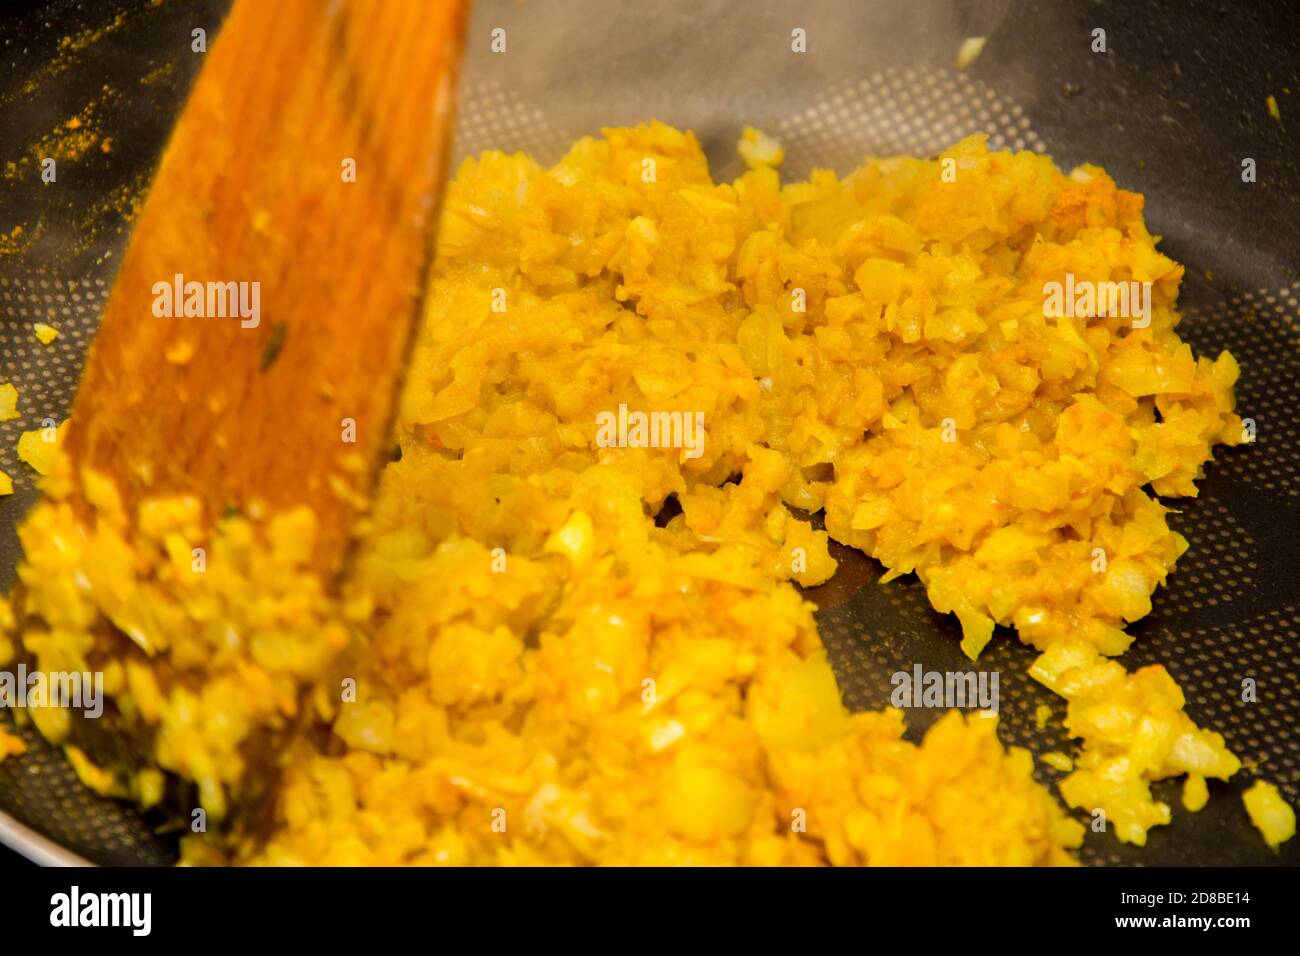 Gros plan sur le mélange de l'oignon frit avec du curry jaune la casserole noire chaude Banque D'Images